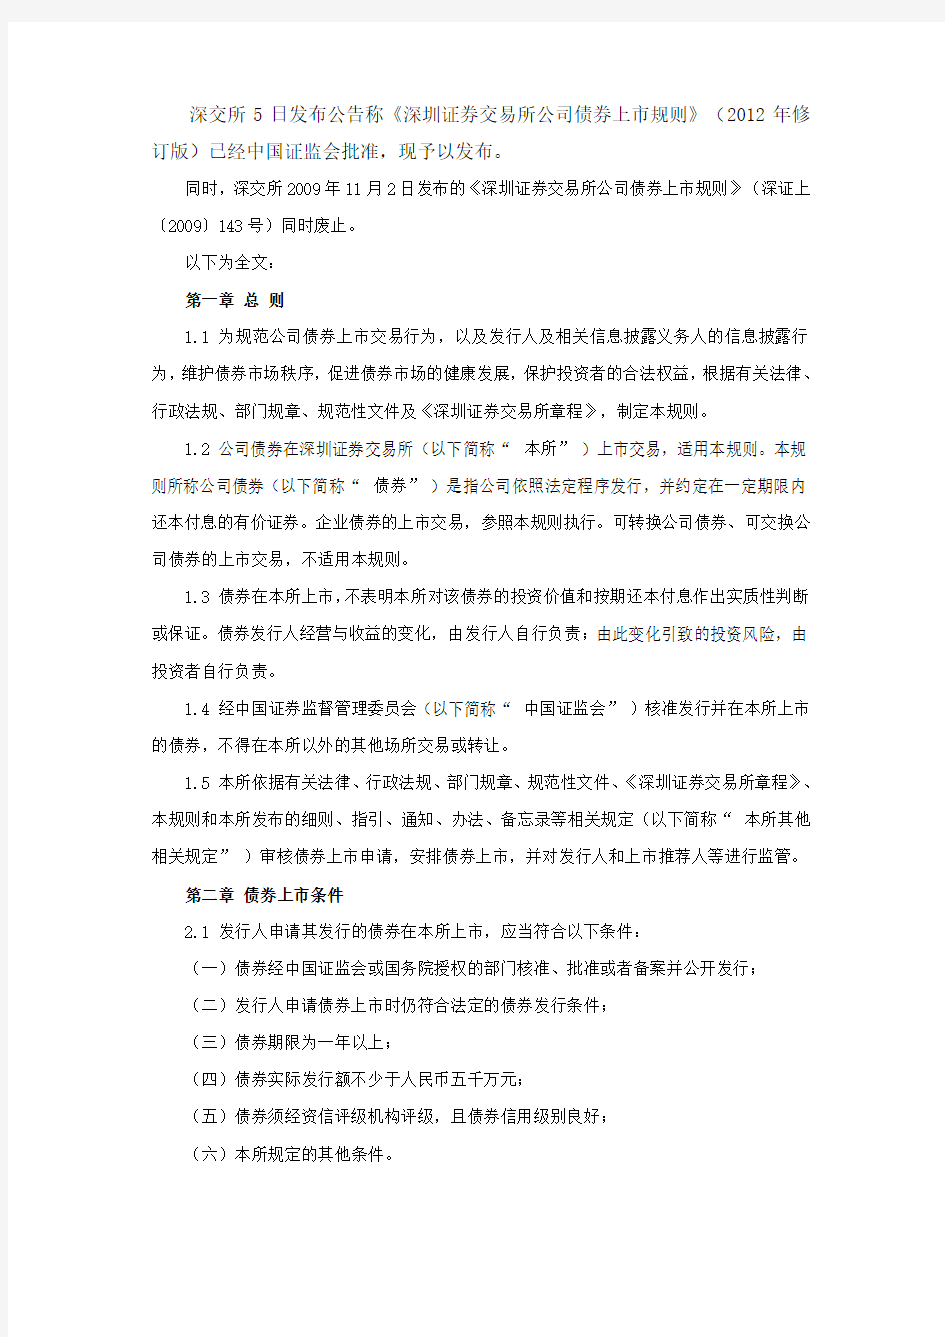 《深圳证券交易所公司债券上市规则》(2012年修订版)